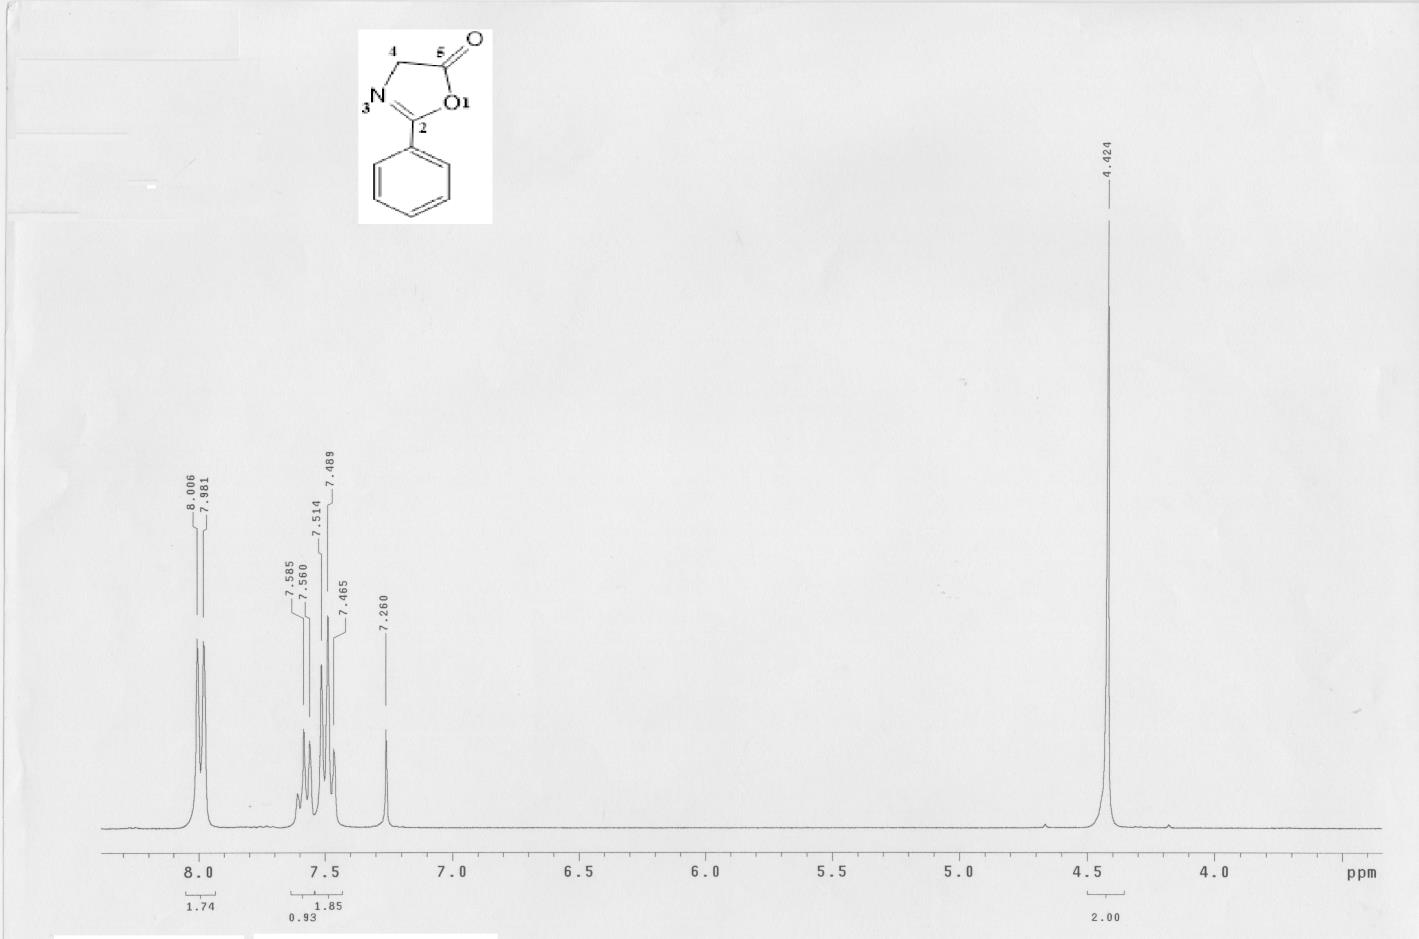 Σχήμα 6.5: Φάσμα 1H-NMR (300 MHz, CDCl3) 2-φαινυλοξαζολ-5-όνης (2) Παραπάνω φαίνεται το φάσμα της 2-φαινυλοξαζολ-5-όνης (2).